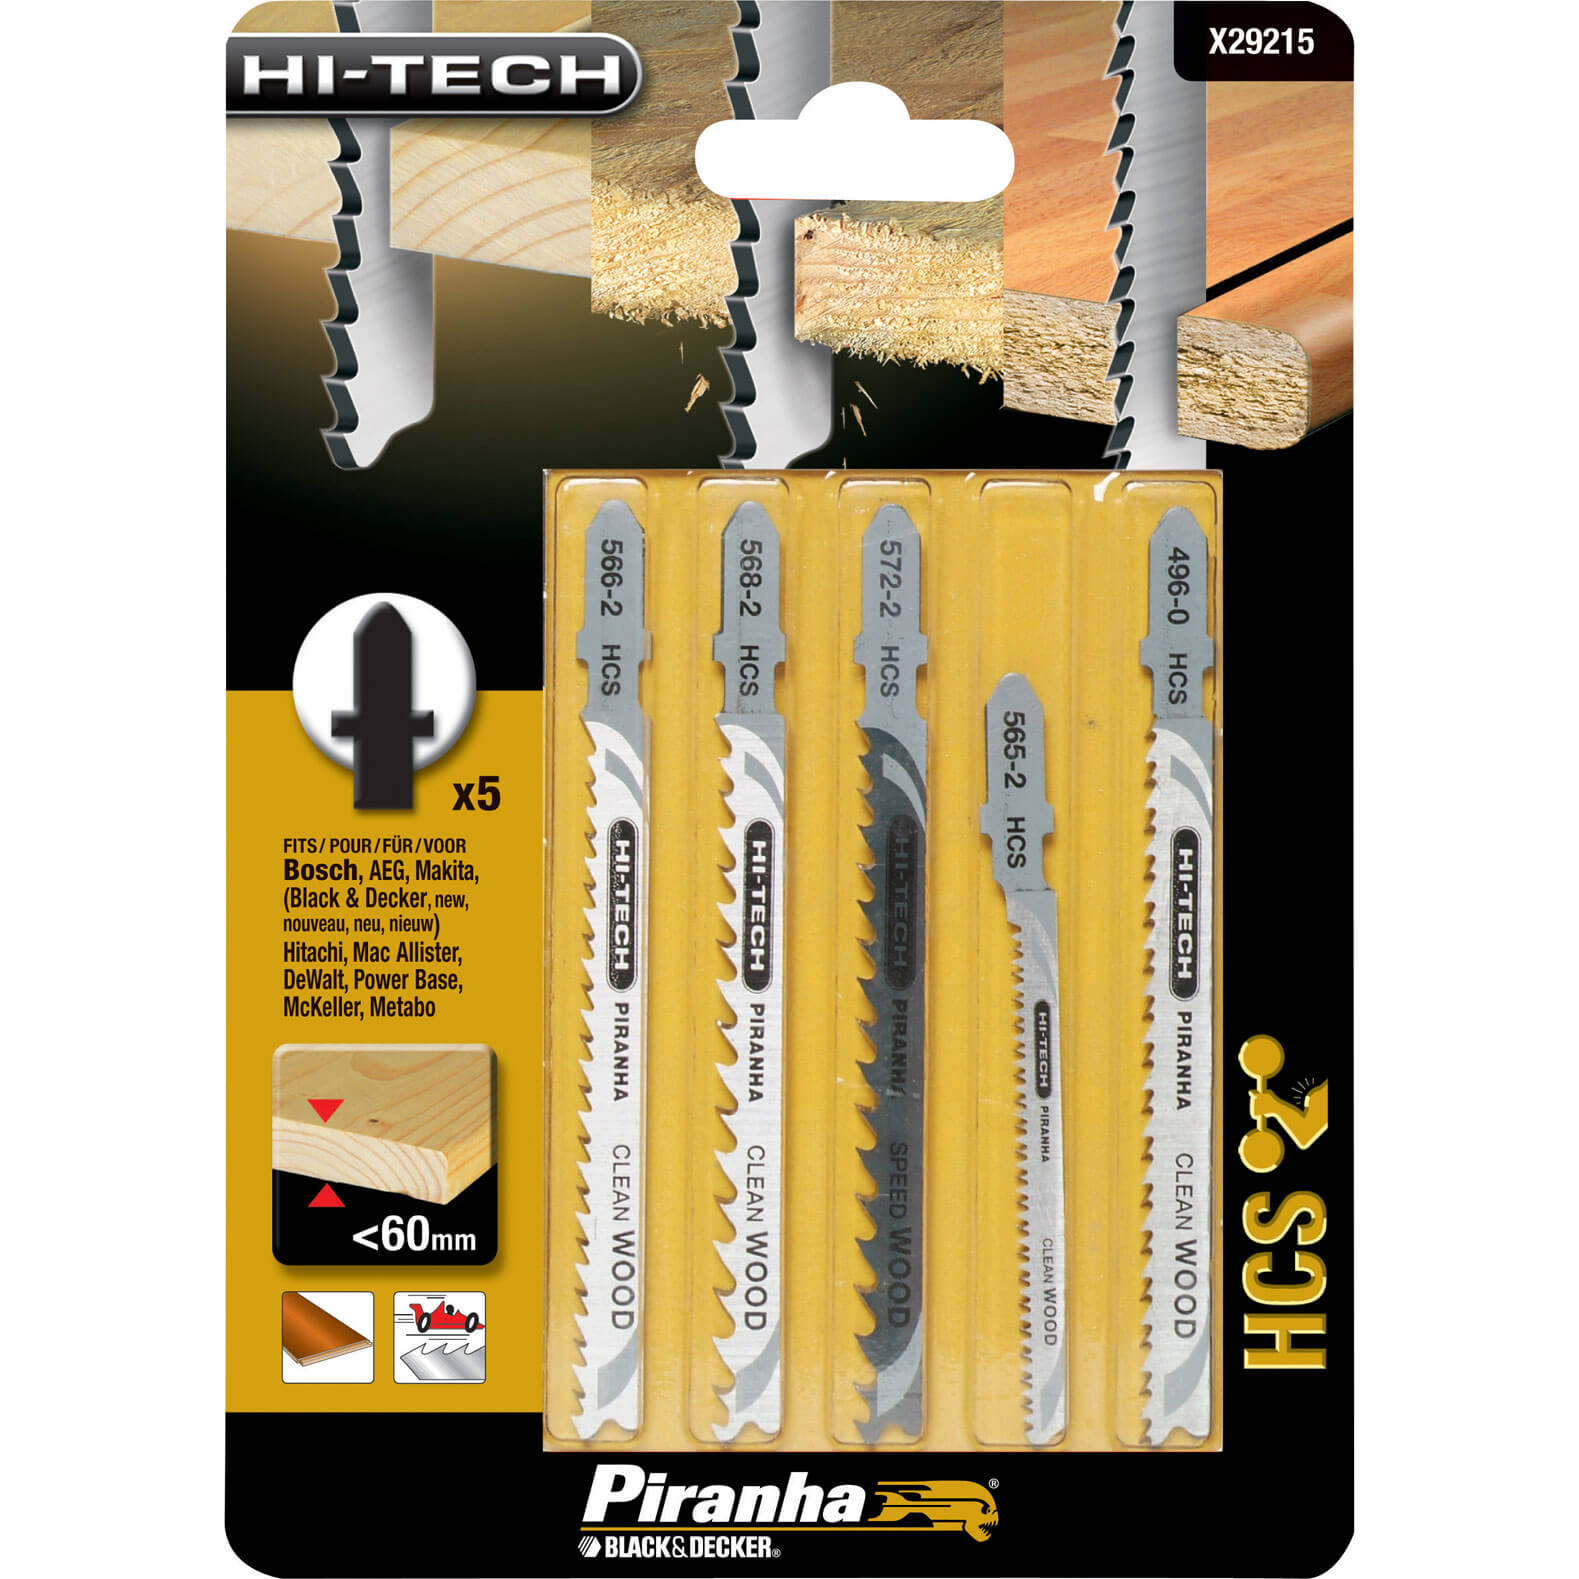 Image of Black and Decker X29215 Piranha 5 Piece Hi Tech Wood HCS T Shank Jigsaw Blade Set